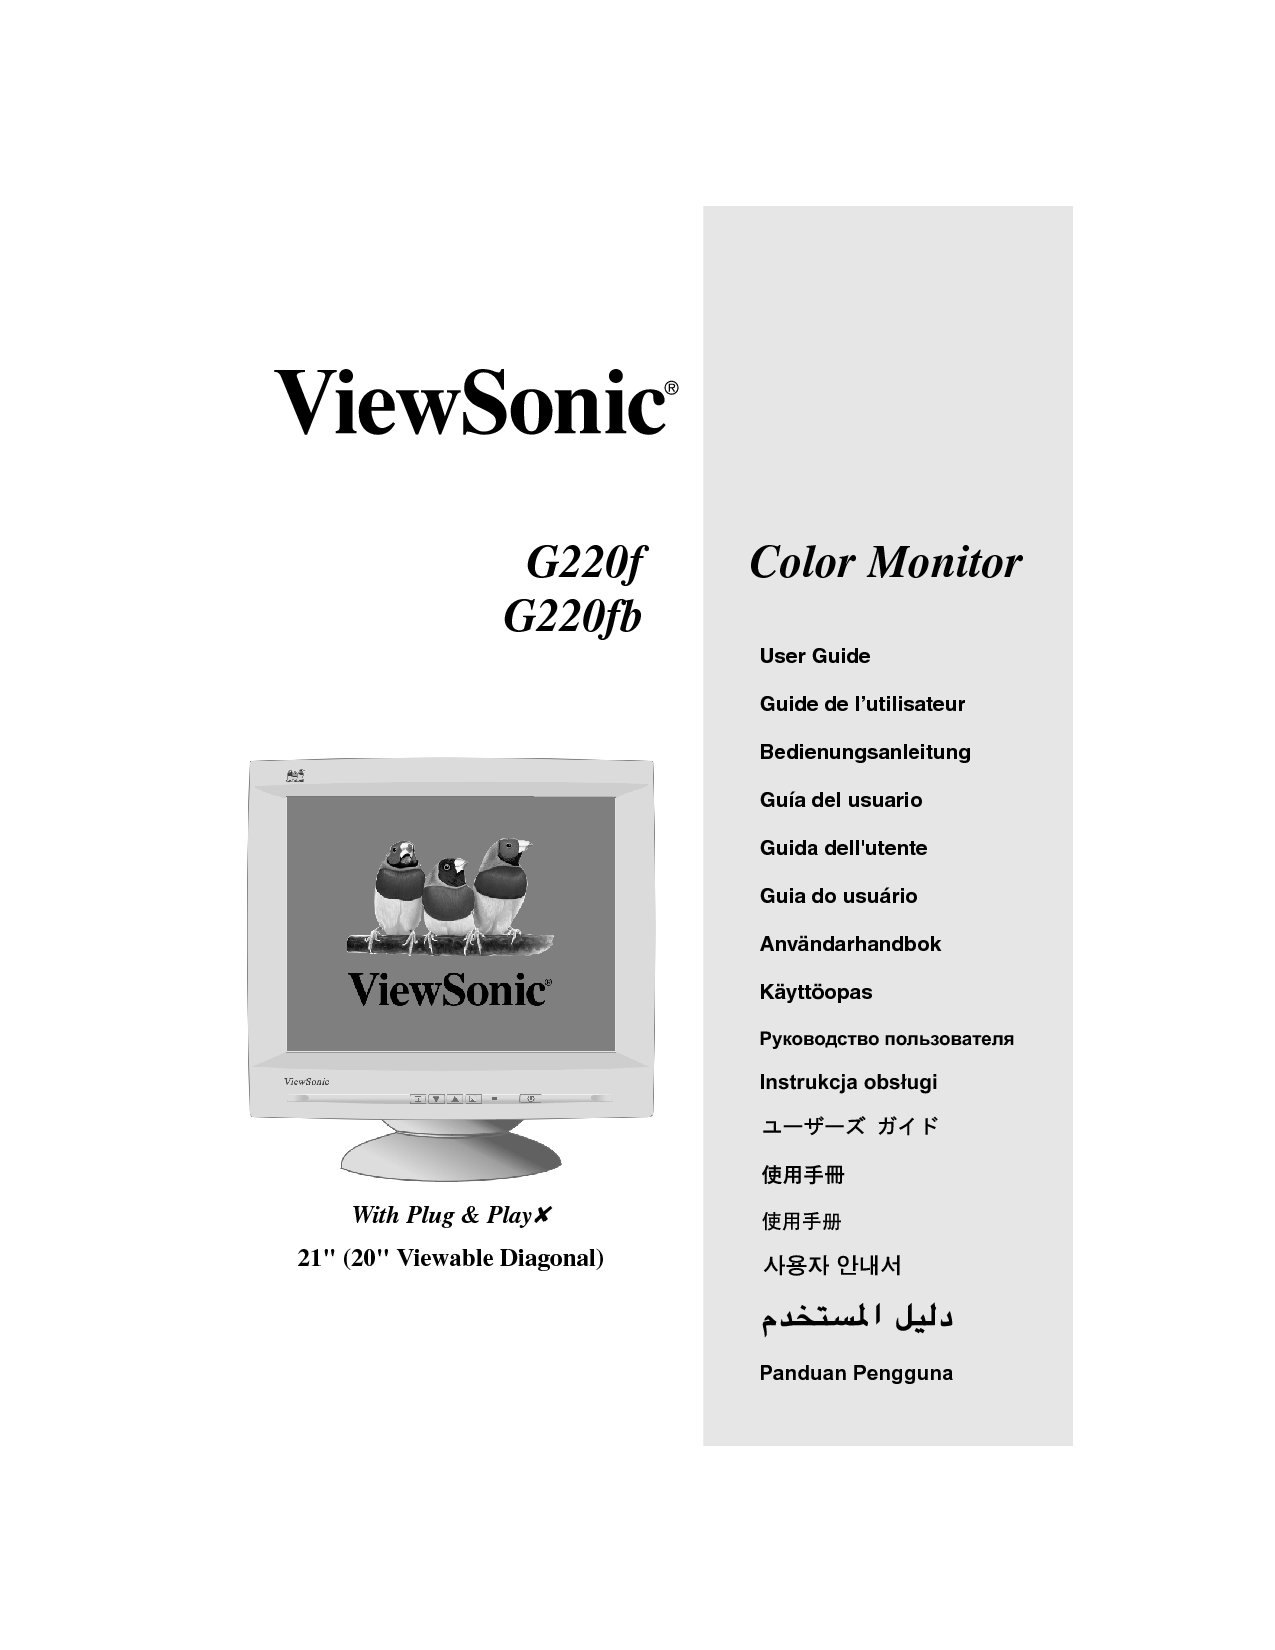 优派 ViewSonic G220f 使用手册 封面